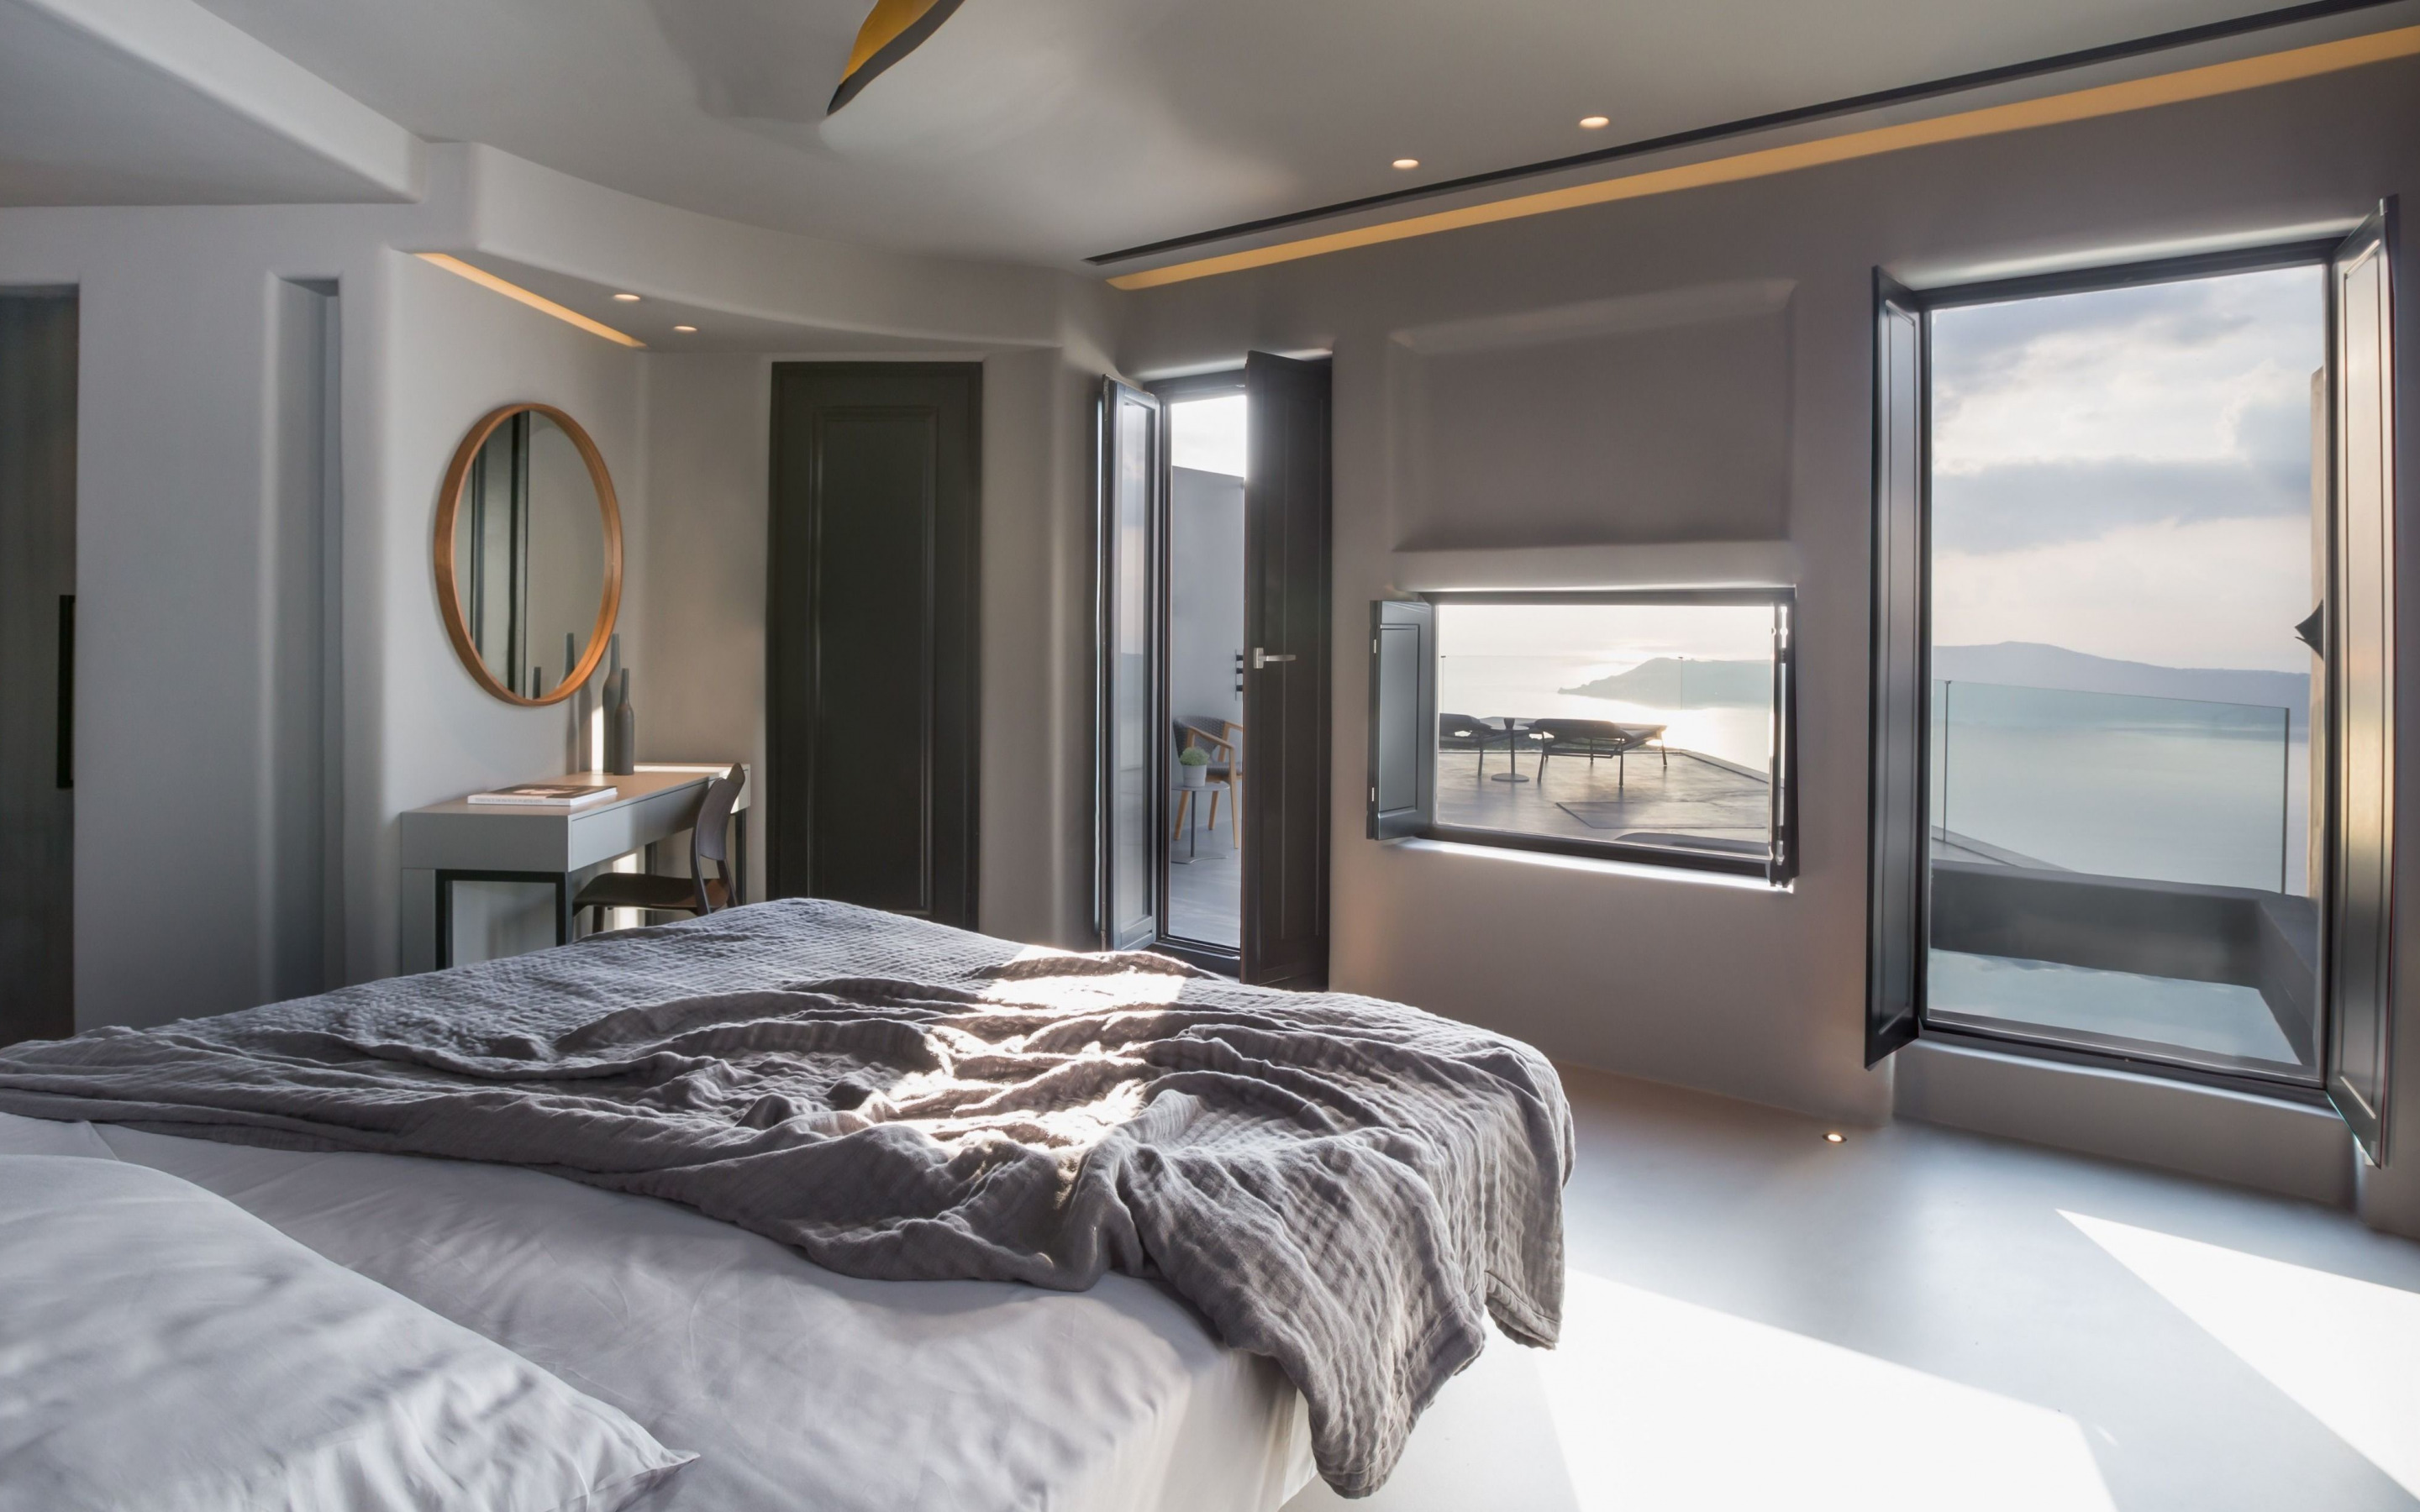 şık daire tasarımı, yatak odası, yatak odasında gri renk, modern yatak odası tasarımı, yatak odası fikri